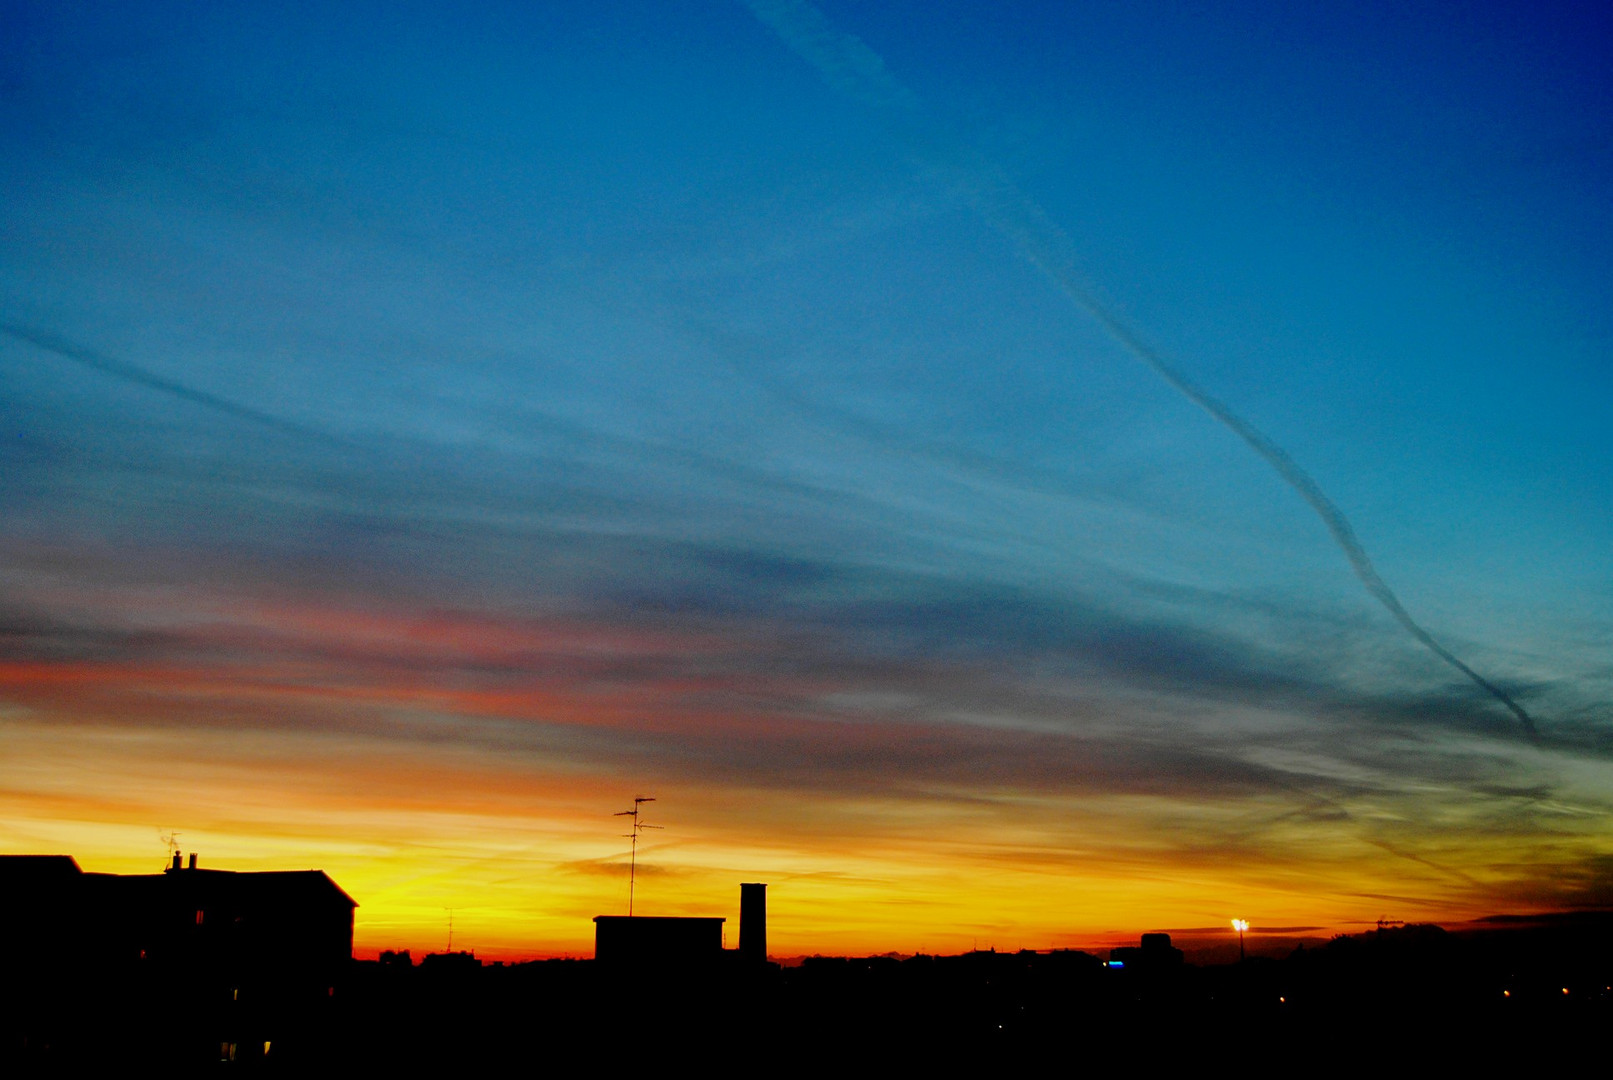 anche a Milano i tramonti sono belli